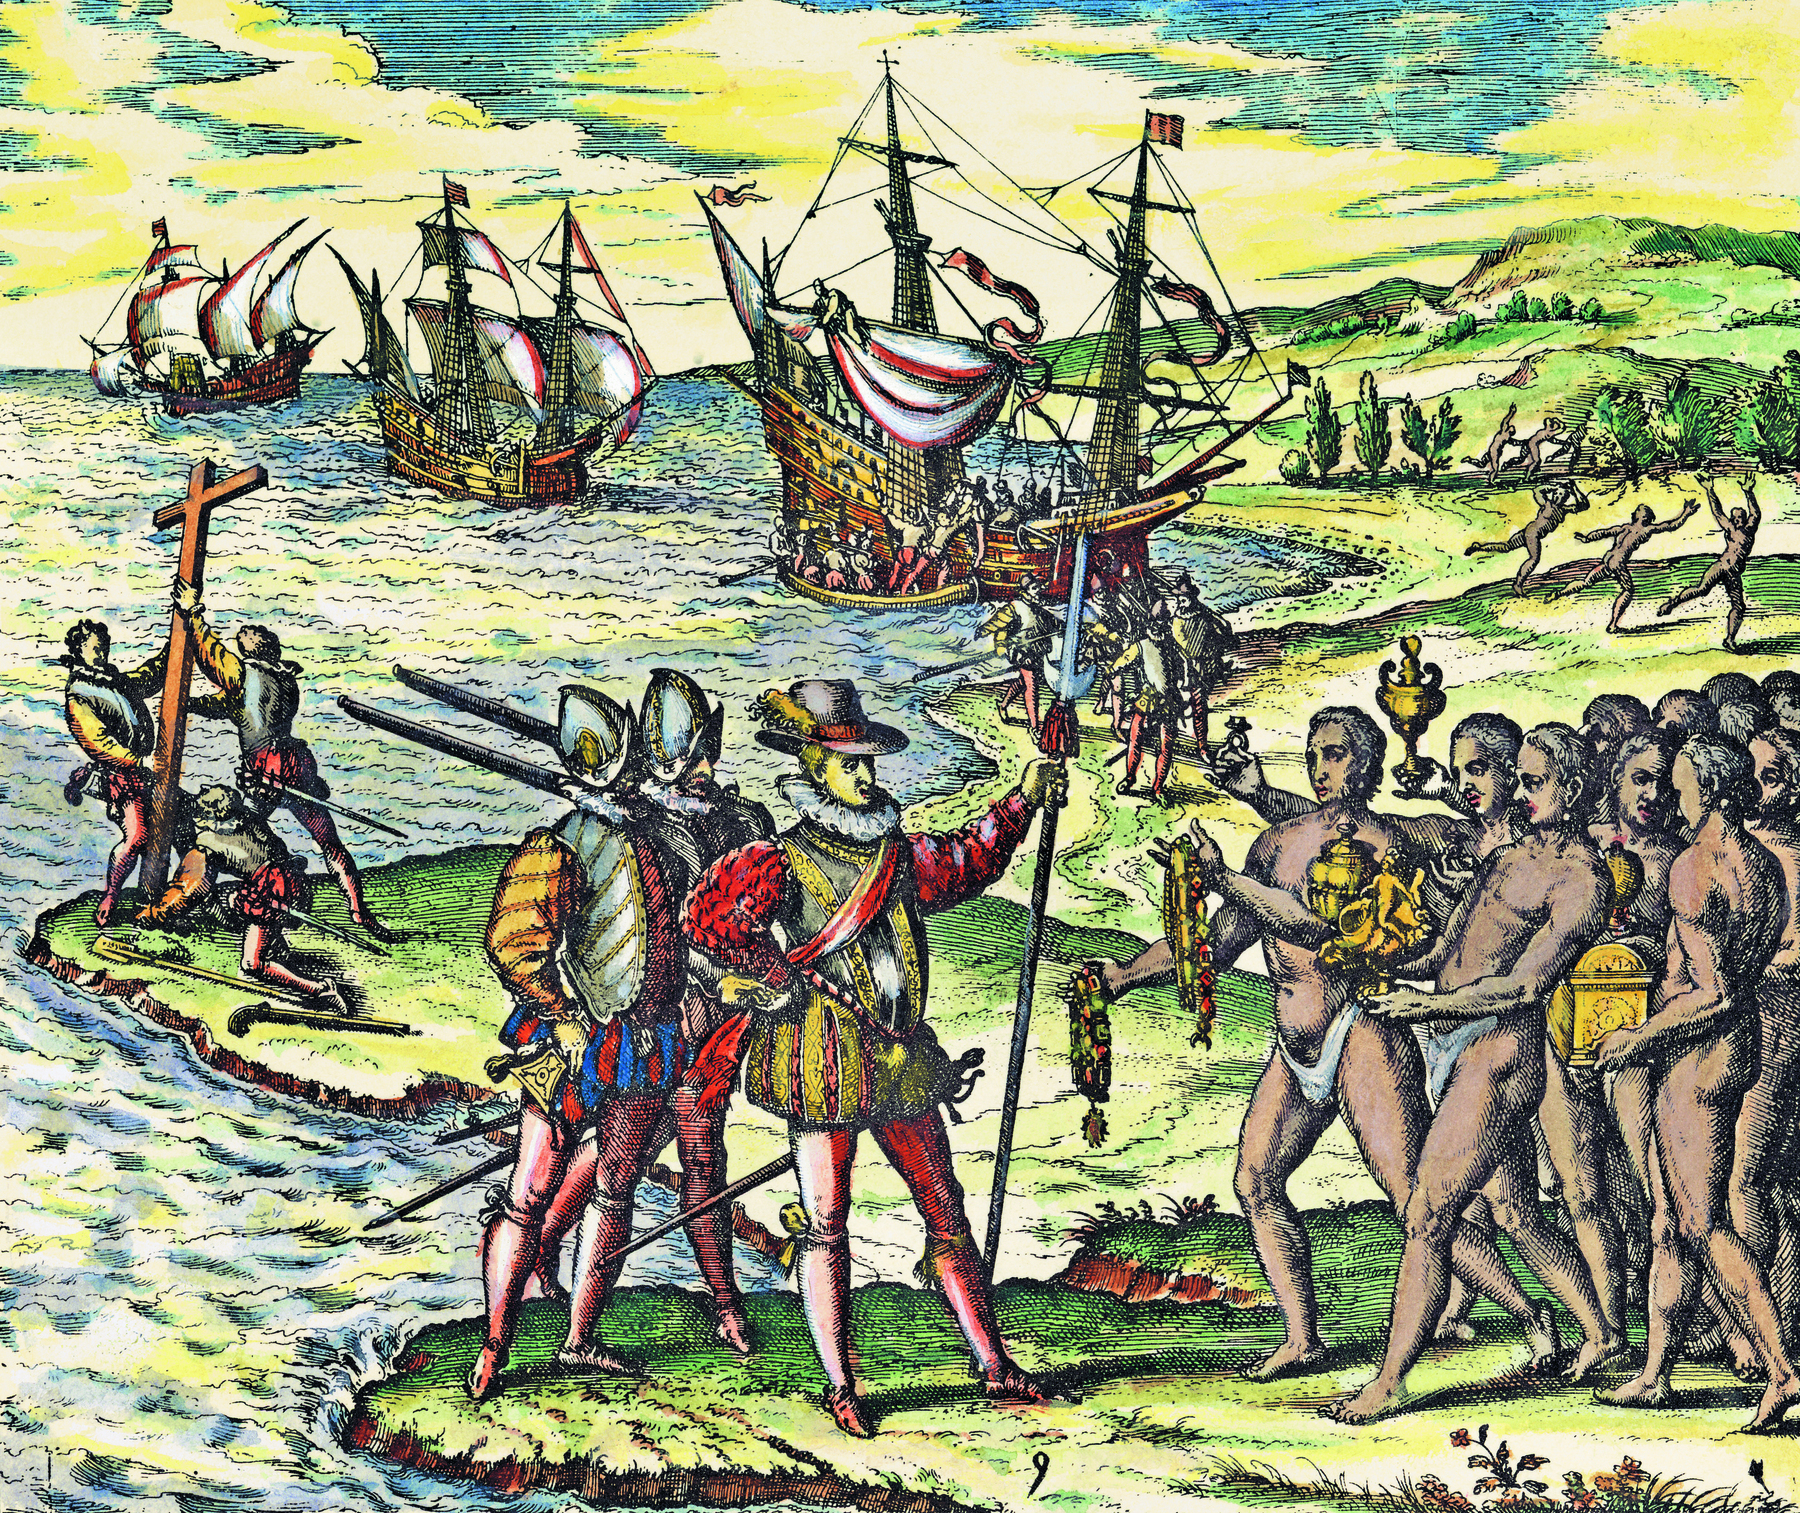 Gravura. À esquerda, mar em cor azul sobre o qual há três embarcações à vela. À direita, praia com a costa em verde, com dois grupo de homens indígenas e três grupos de homens brancos. Em primeiro plano, no centro e à esquerda, na parte inferior da gravura, o encontro entre um grupo de três homens brancos e dezenas de indígenas. À esquerda, frente do grupo, um homem branco com um traje vermelho de mangas bufantes, calças justas, colete dourado, sapatos vermelhos, chapéu com plumas sobre a cabeça, a mão esquerda erguida à frente segurando uma lança fina, com a outra mão na cintura, em pose altiva e confiante. Atrás dele, dois homens de capacete metálico sobre a cabeça, blusa de mangas compridas, bufantes, amarelas, saiote em azul e vermelho, calças justas vermelhas e sapatos vermelhos. Todos eles carregam espadas presas às suas cinturas. Diante deles, há uma dezena de homens indígenas que vestem apenas tangas brancas e estão descalços. Eles seguram objetos de ouro em suas mãos, como caixas, taças e colares, oferecendo-as aos brancos. Alguns homens estão hesitantes: um deles recua  as costas para trás, os demais conversam entre si. À esquerda, na beira da praia, três homens brancos vestidos com armaduras de metal protegendo o peito fincam uma grande cruz de madeira sobre a terra.  À direita, em segundo plano,  um grupo de homens indígenas corre para a direita, um deles tem as mãos erguidas para o alto. Na praia, atrás deles, há um grupo de homens brancos vestidos com armaduras metálicas protegendo o peito, blusas amarelas de mangas bufantes amarelas e calças justas de cor vermelha.  Eles carregam lanças compridas apoiadas em seus ombros. Atrás deles, uma embarcação à vela, feita de madeira, com homens brancos de calças vermelhas no convés, desembarcando da embarcação maior para um bote de madeira menor. No mar, ao fundo, há outras duas embarcações grandes com velas brancas e vermelhas. No alto, o céu em azul e nuvens em amarelo.